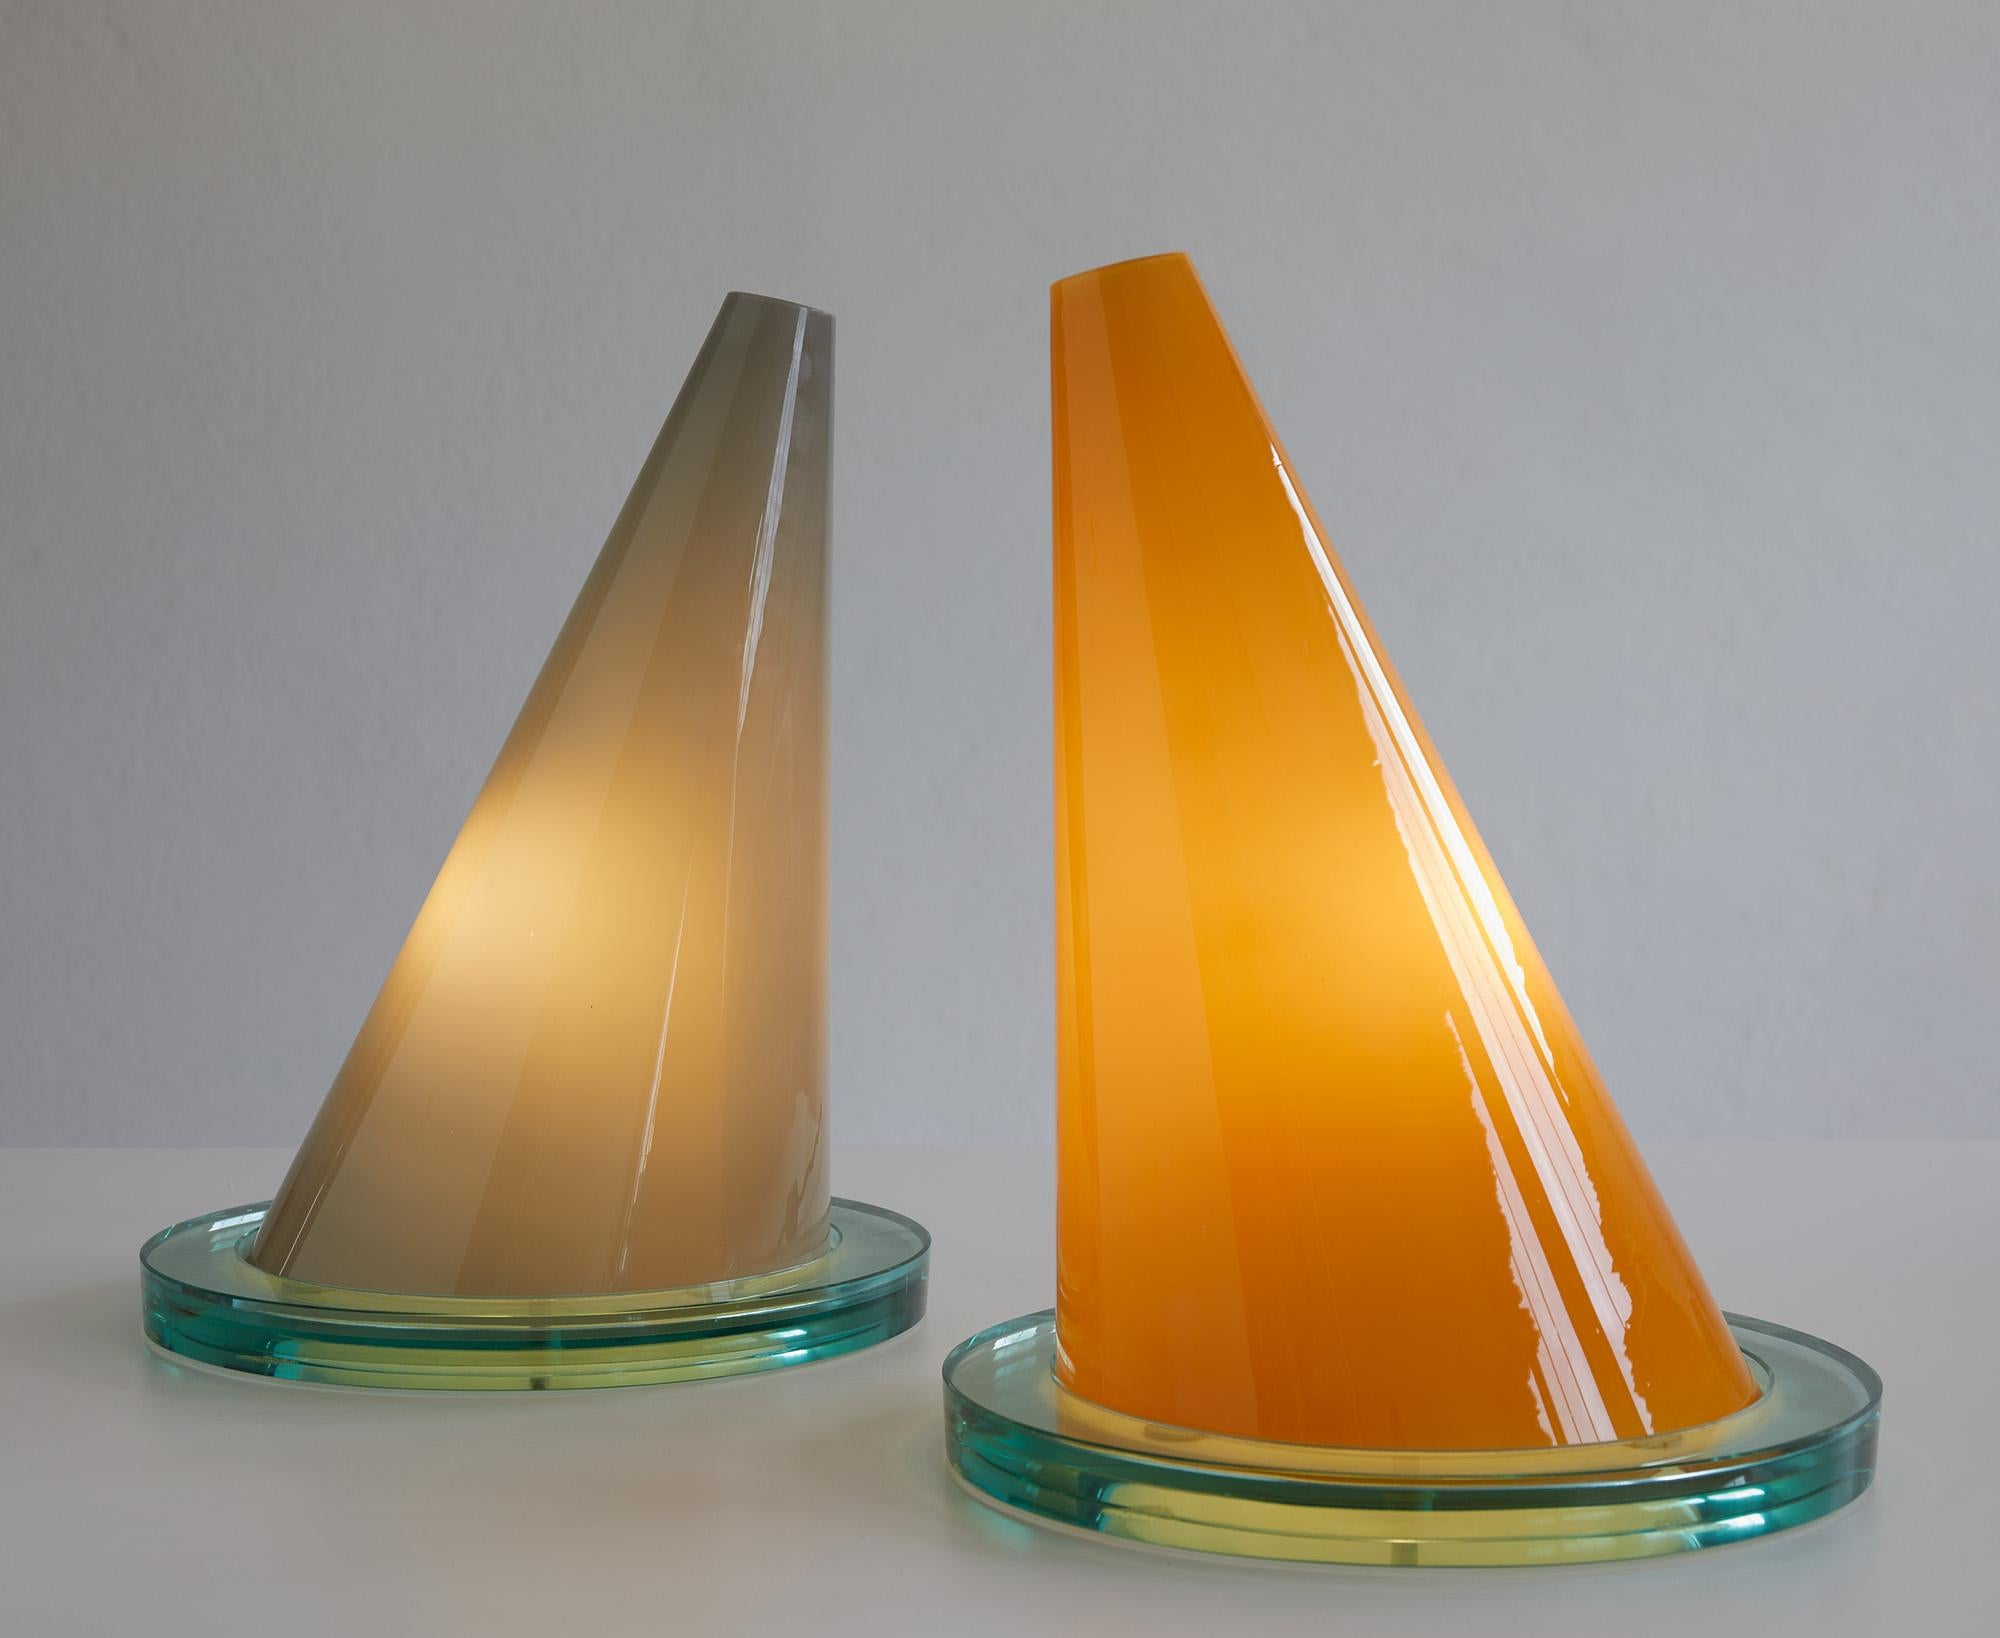 Ein Paar Tischlampen Modell Oz aus Murano-Glas von Daniela Puppa und Franco Raggi aus dem Jahr 1981.

Ausgabe Fontana Arte 1981

Jede Leuchte besteht aus einem geneigten konischen Lampenschirm aus Opalglas 